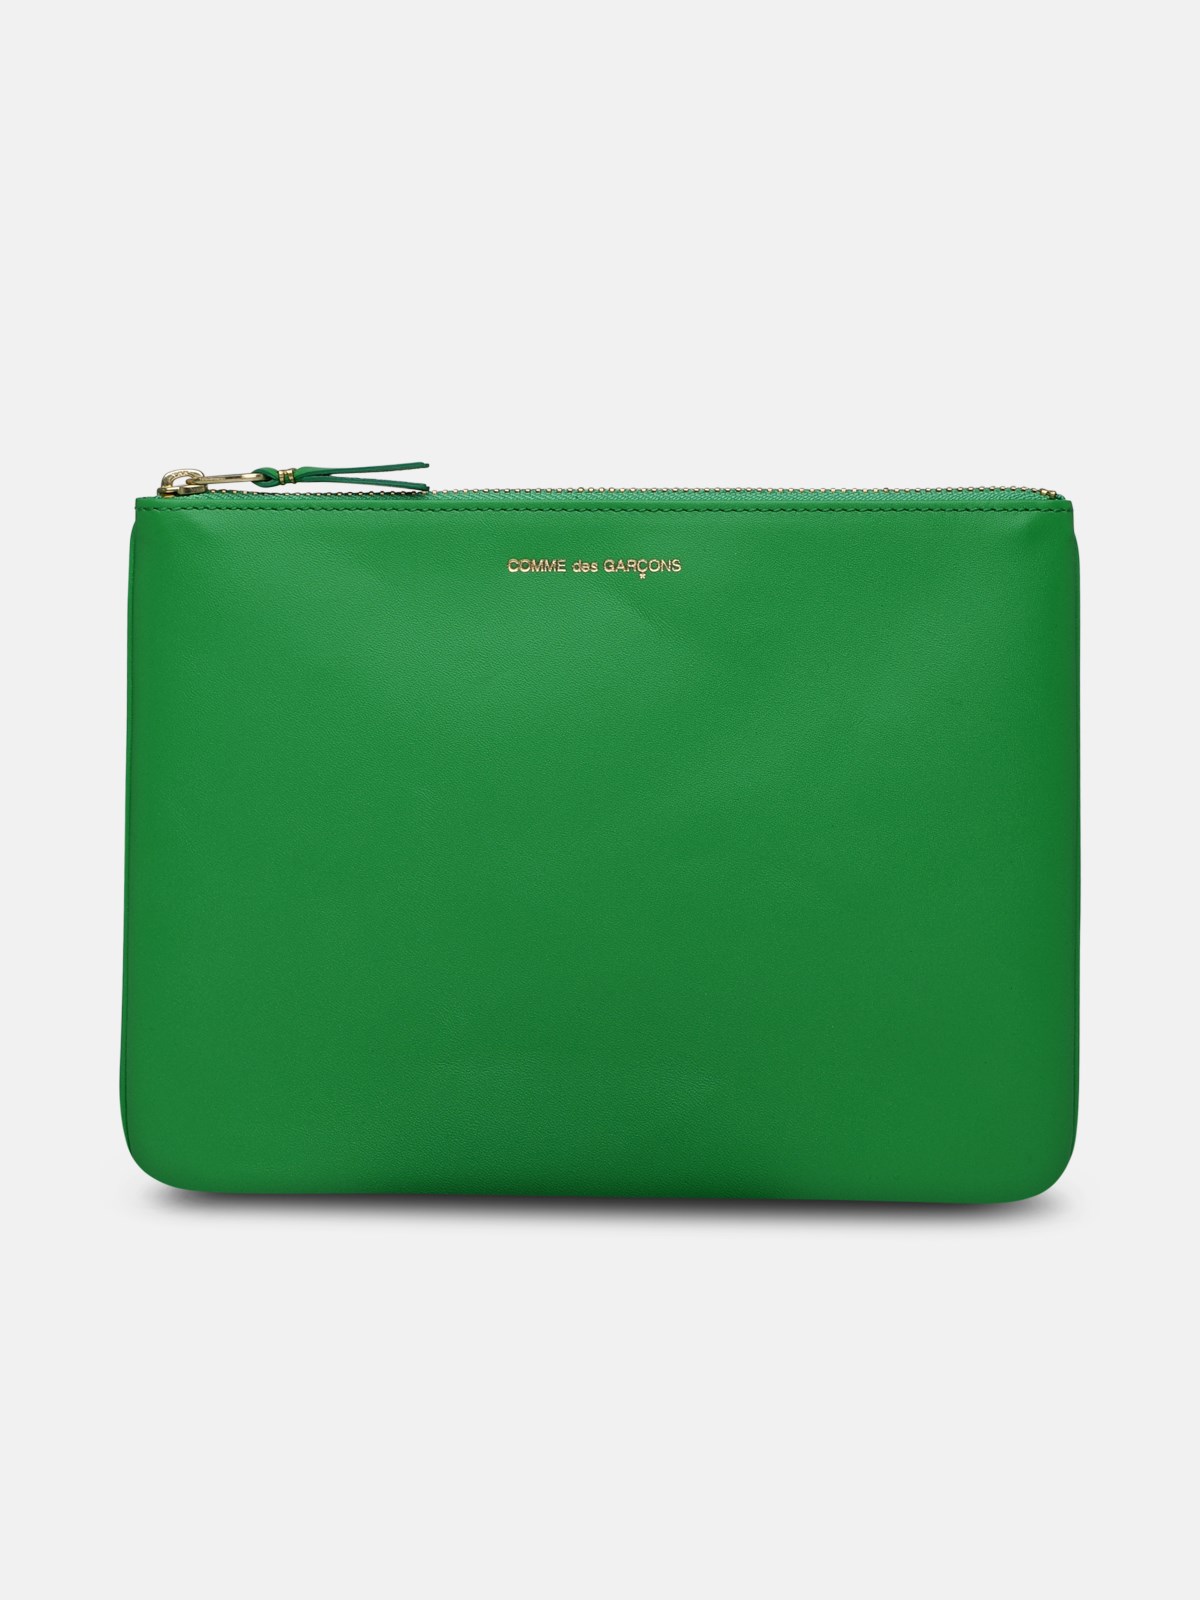 Comme Des Garçons Green Leather Envelope Bag